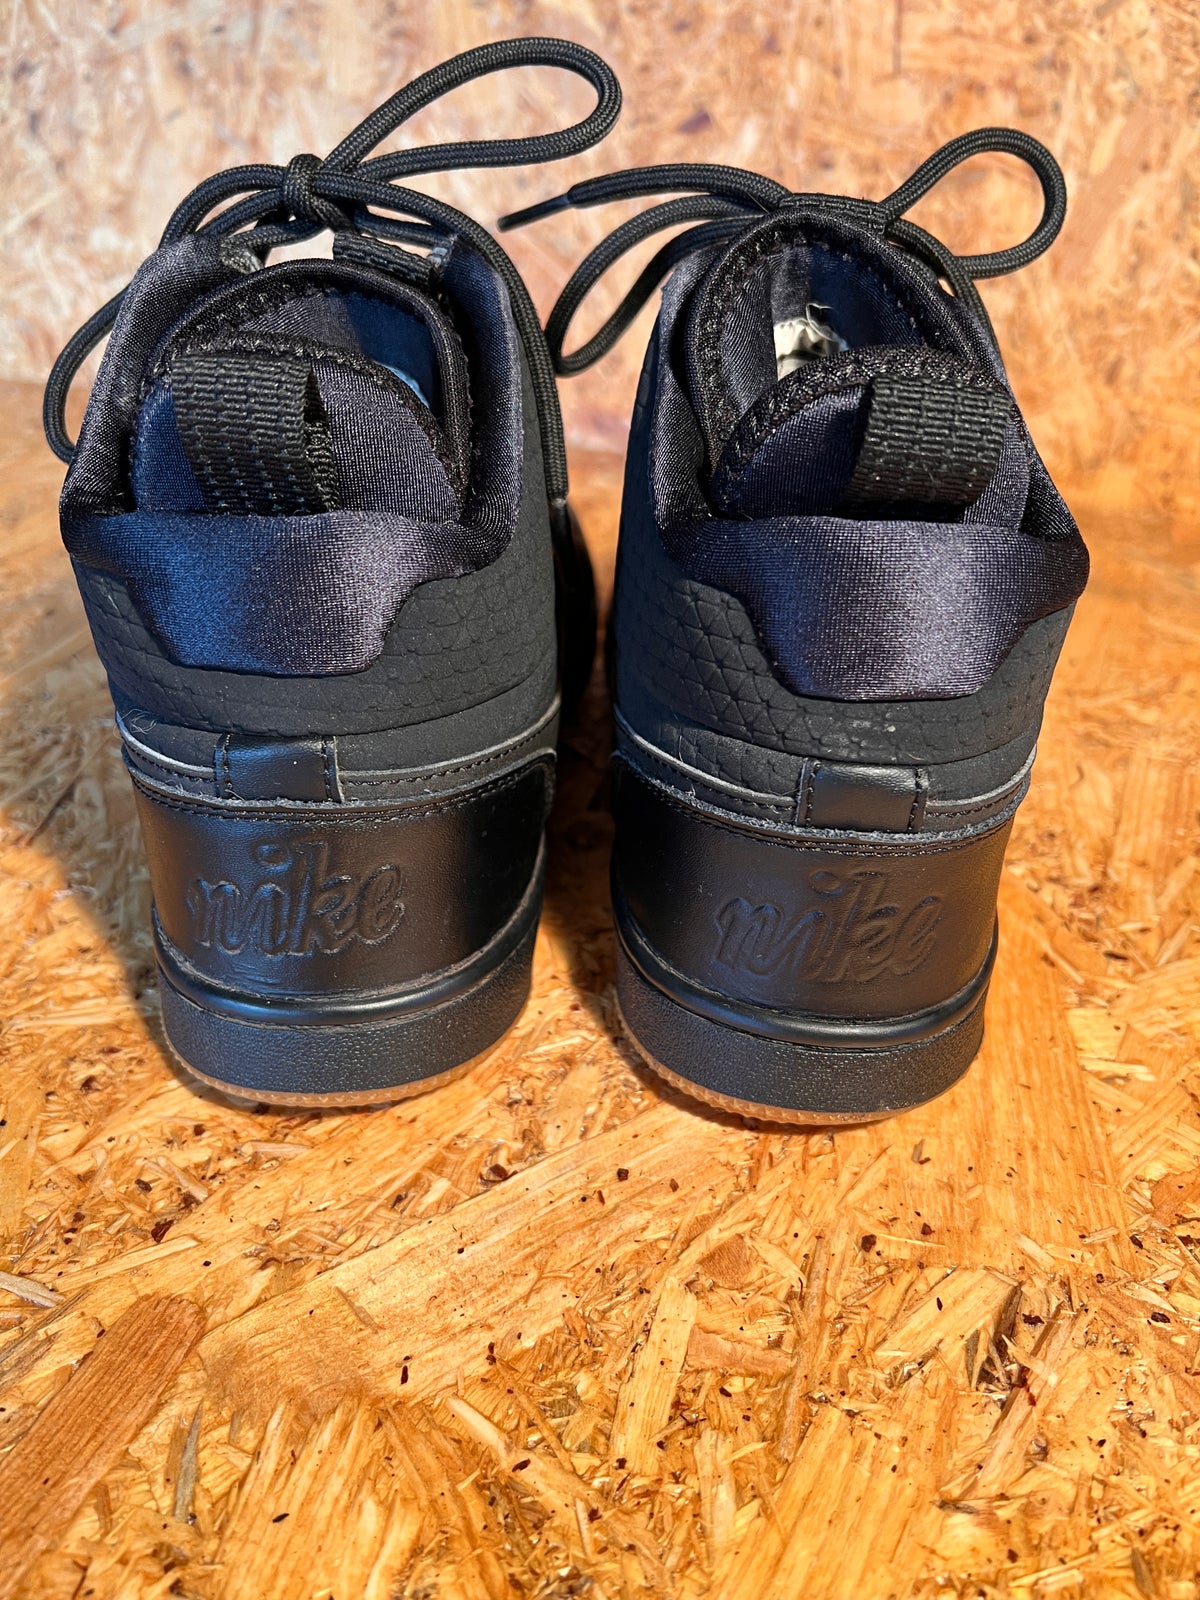 Støvler, Nike Ebernon Mid Winter 'Black gum' støvler -